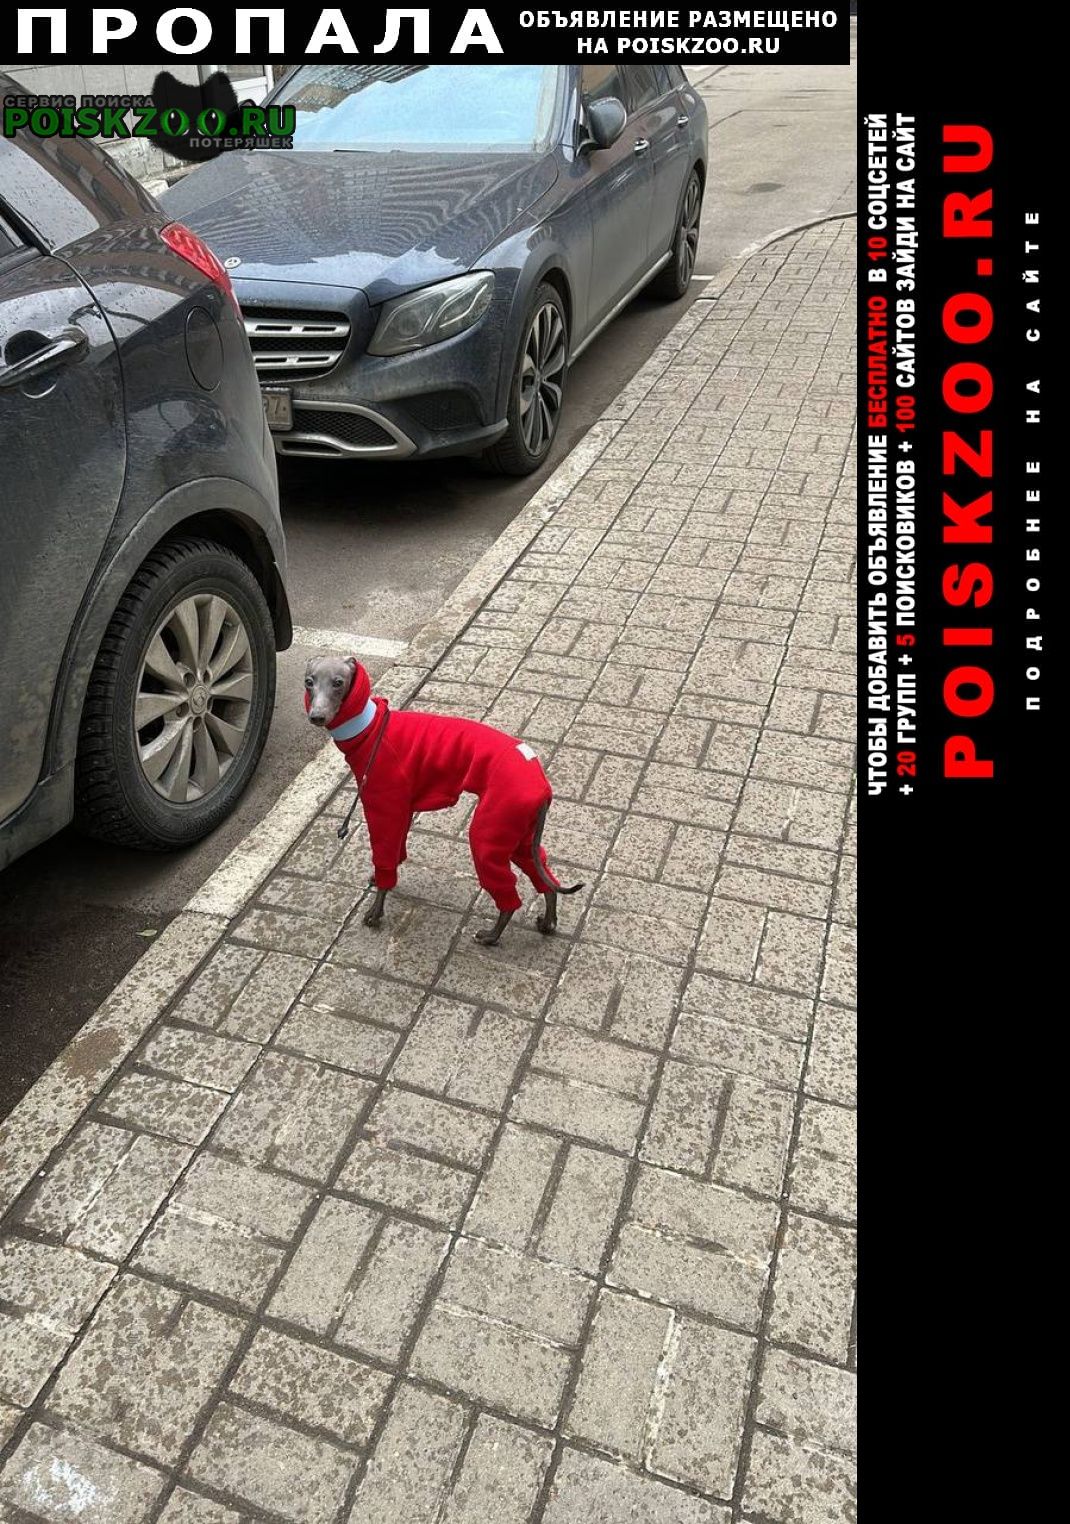 Пропала собака кобель серая левретка в красном костюме Москва